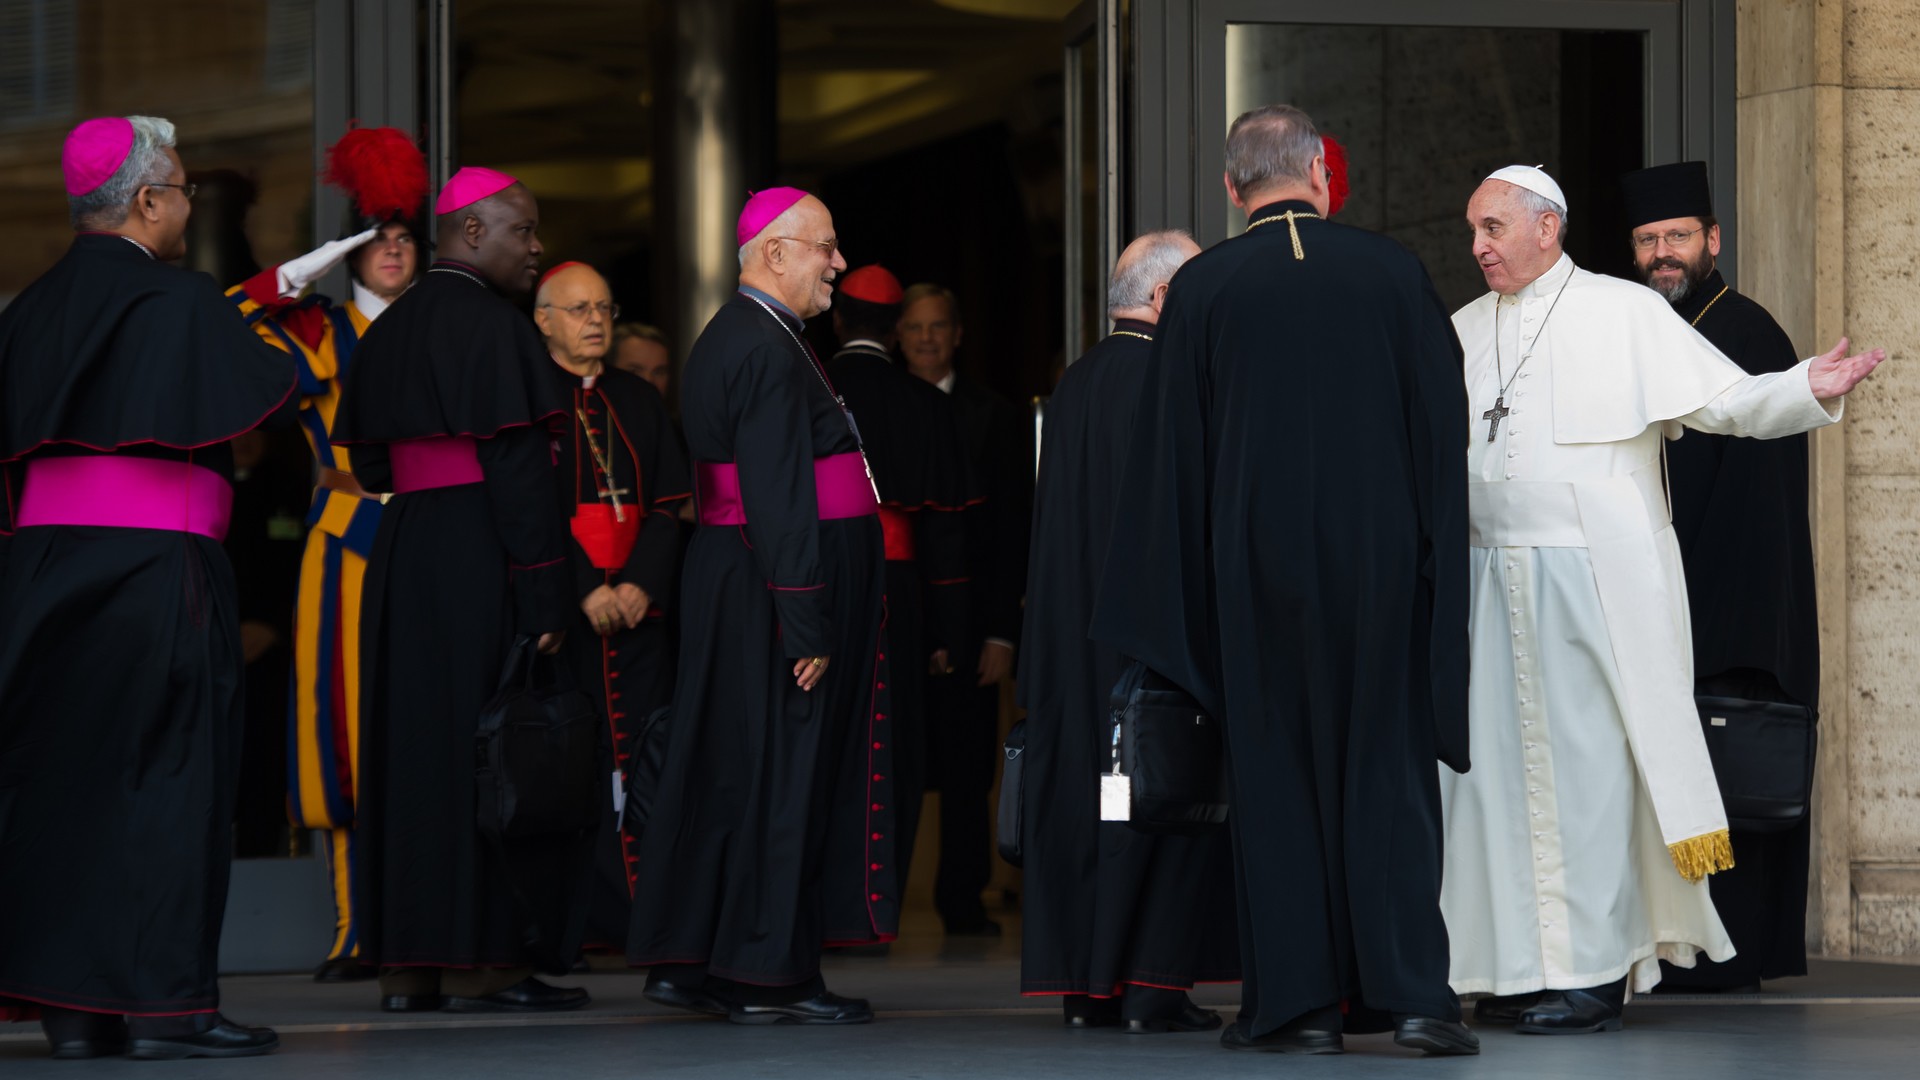 Le pape François salue les Pères synodaux  (photo: Catholic Church of england and Wales) 